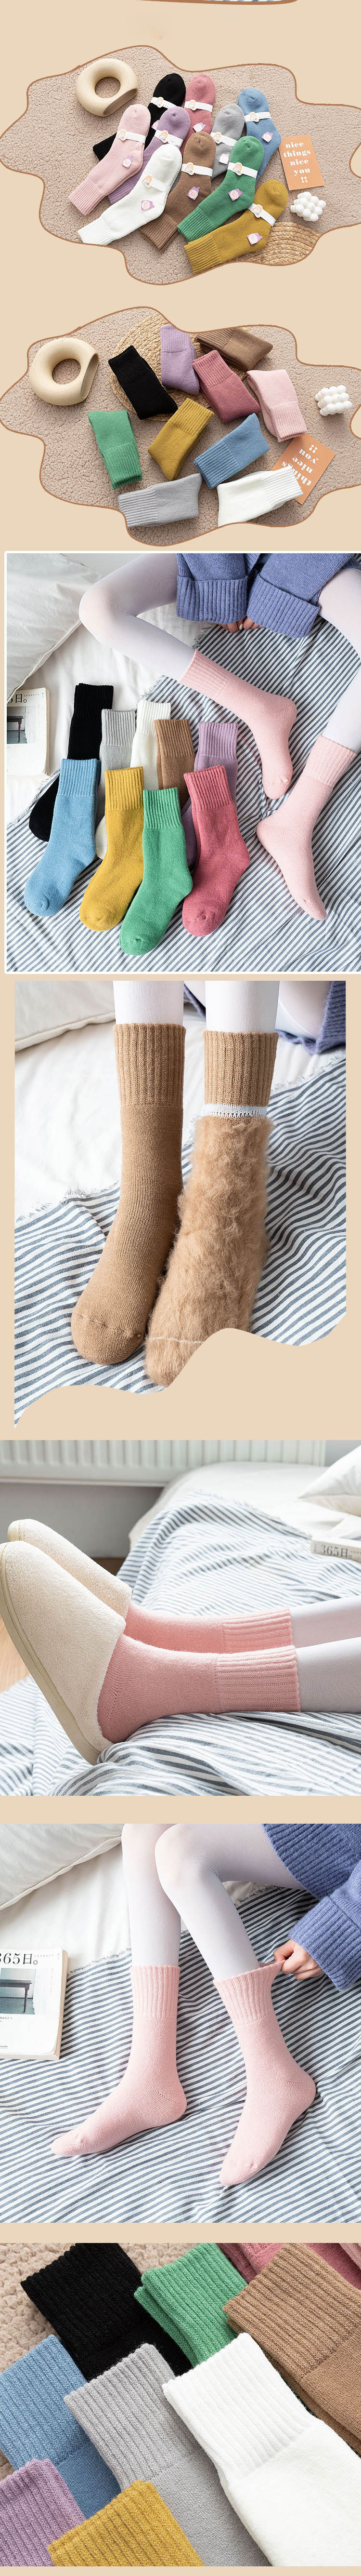 sock-029# ถุงเท้าวูลกันหนาว ถุงเท้ากันหนาวใส่ติดลบ ถุงเท้าขนแกะ